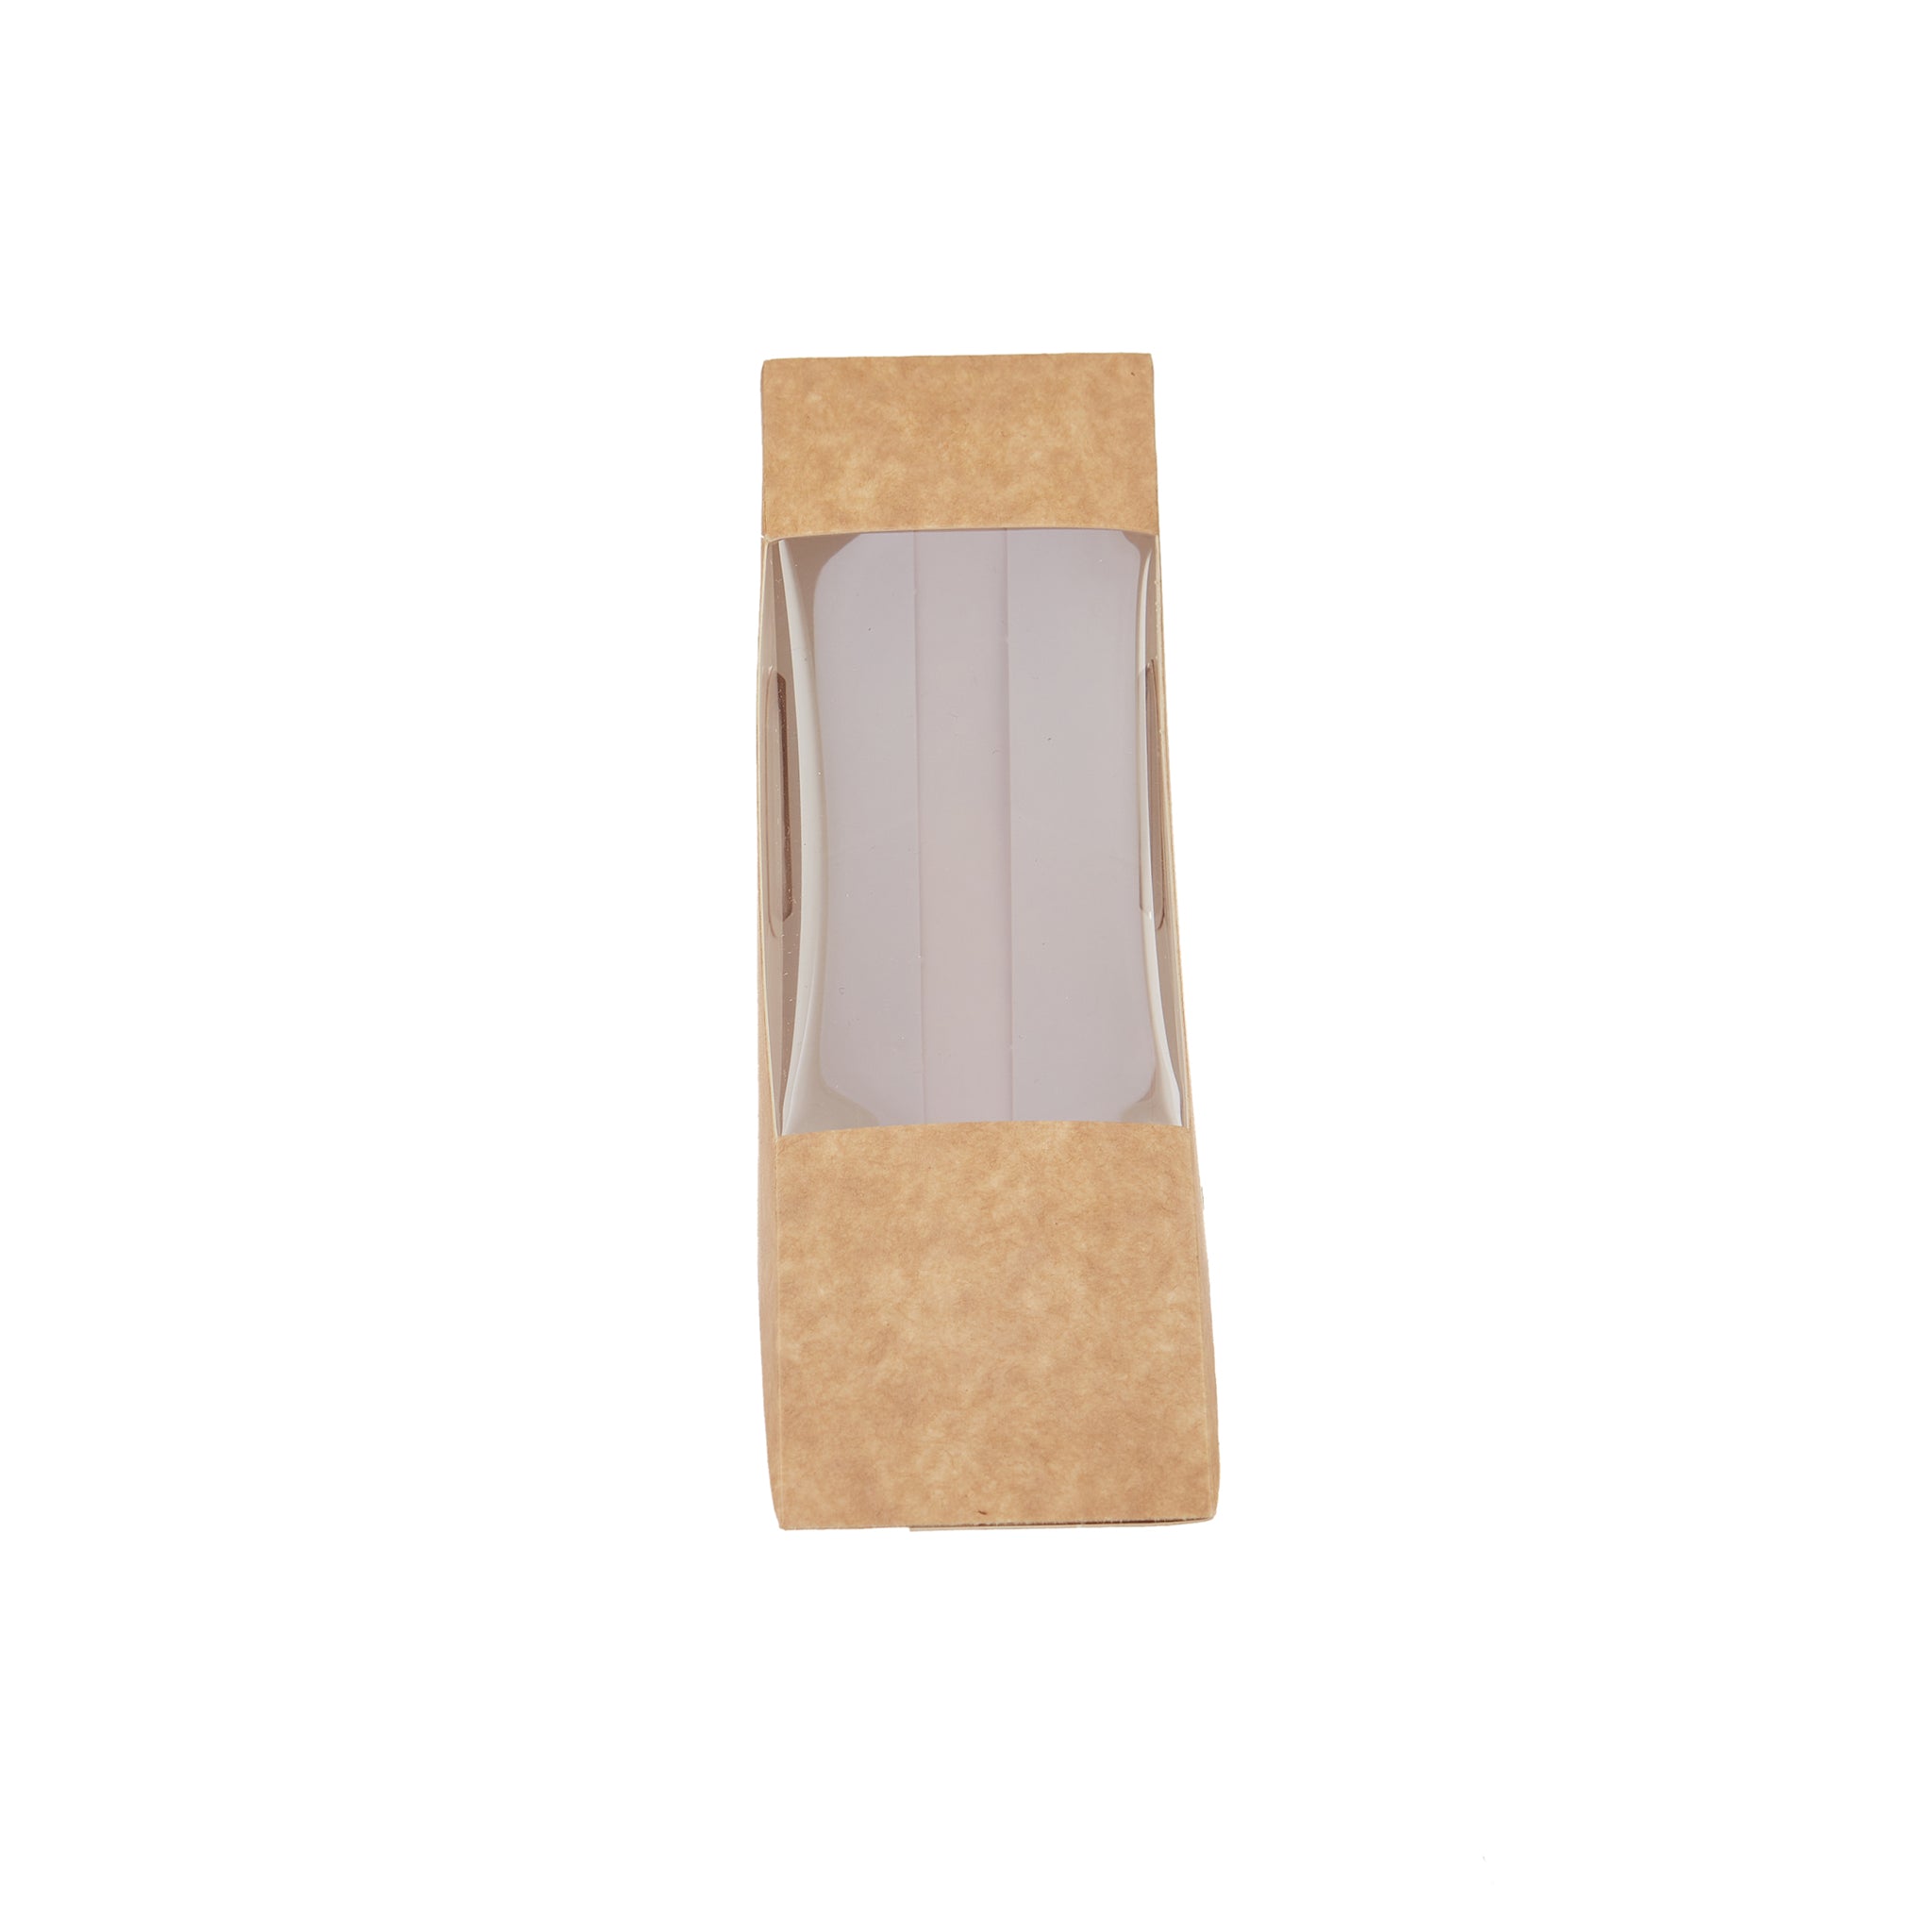 Sandwich Wedge Box with Window - Hotpack UAE